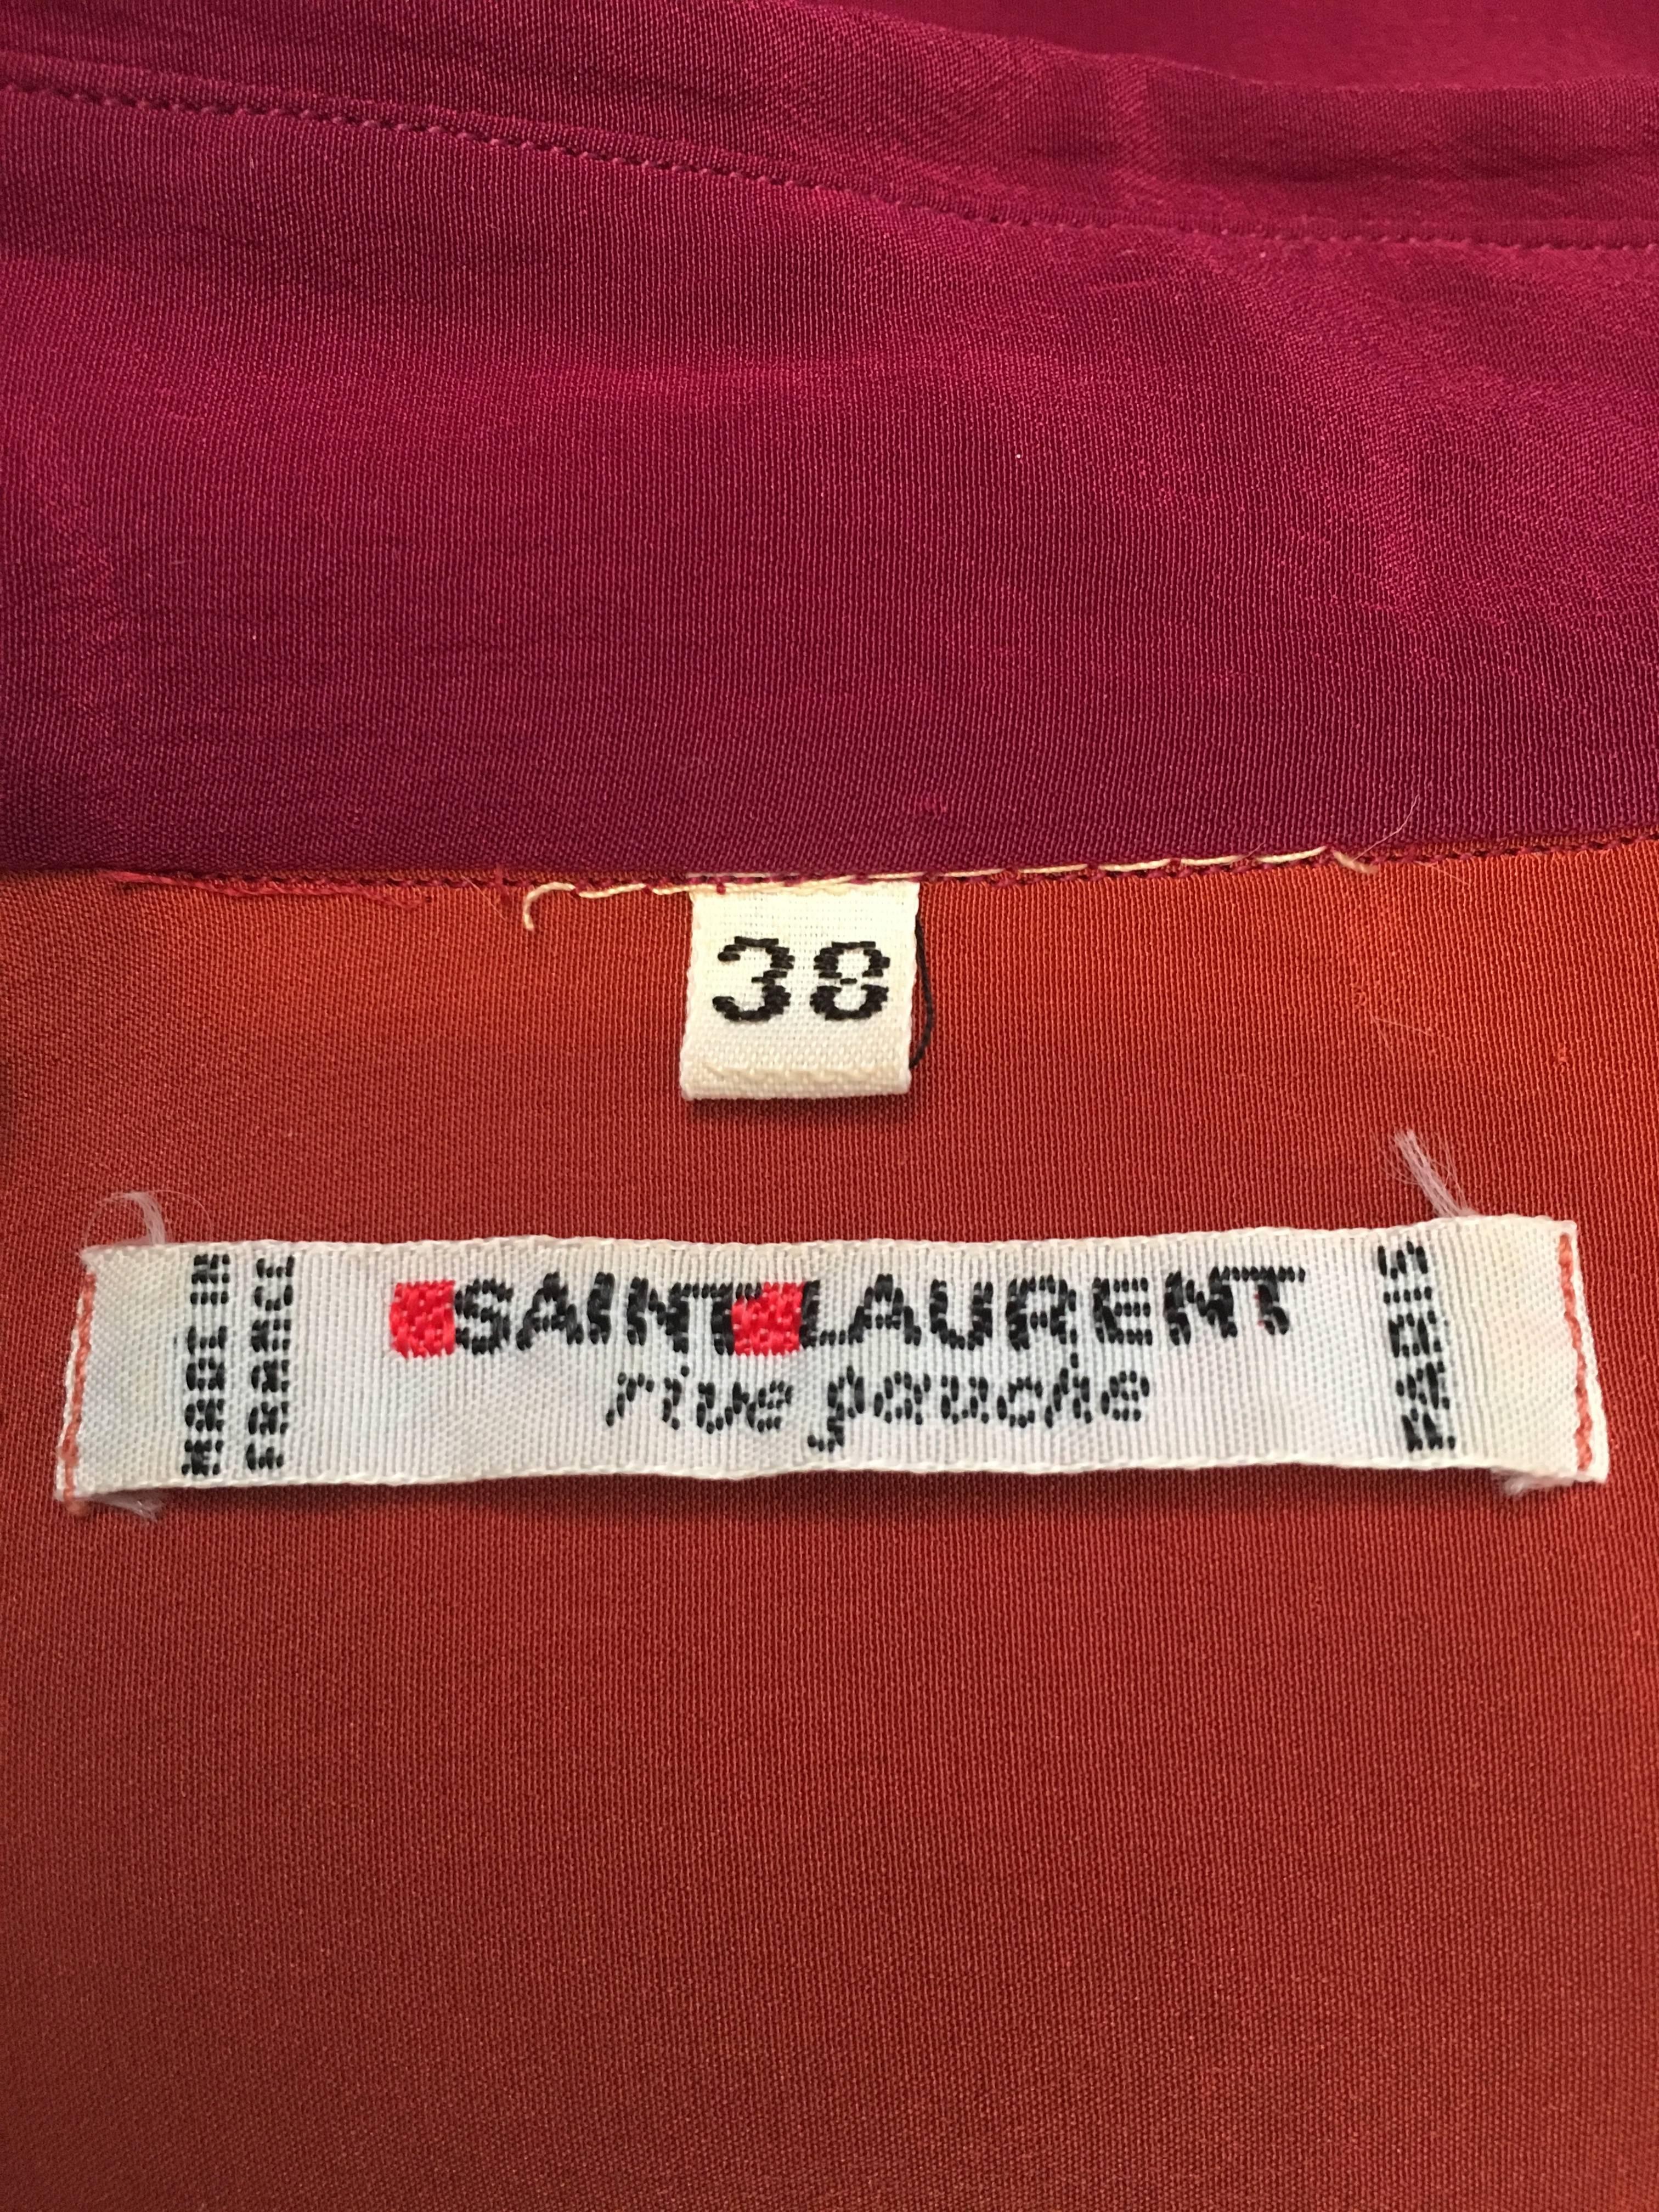 Saint Laurent Rive Gauche 1970s Silk Blouse size 4. For Sale 4